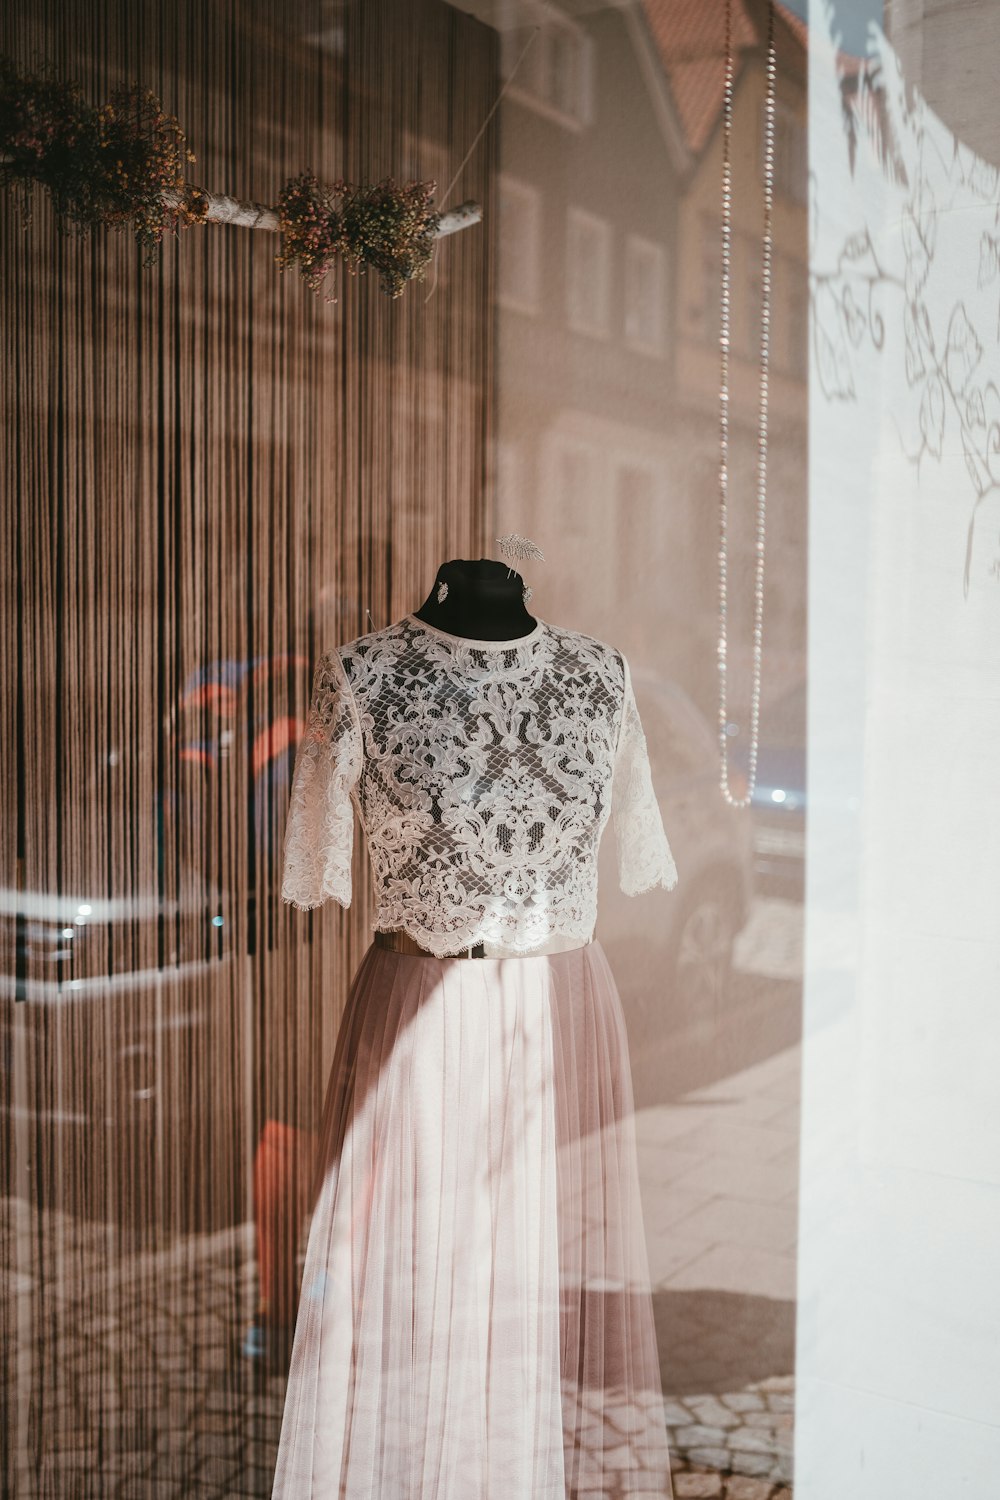 Ein Kleid in einem Schaufenster ausgestellt